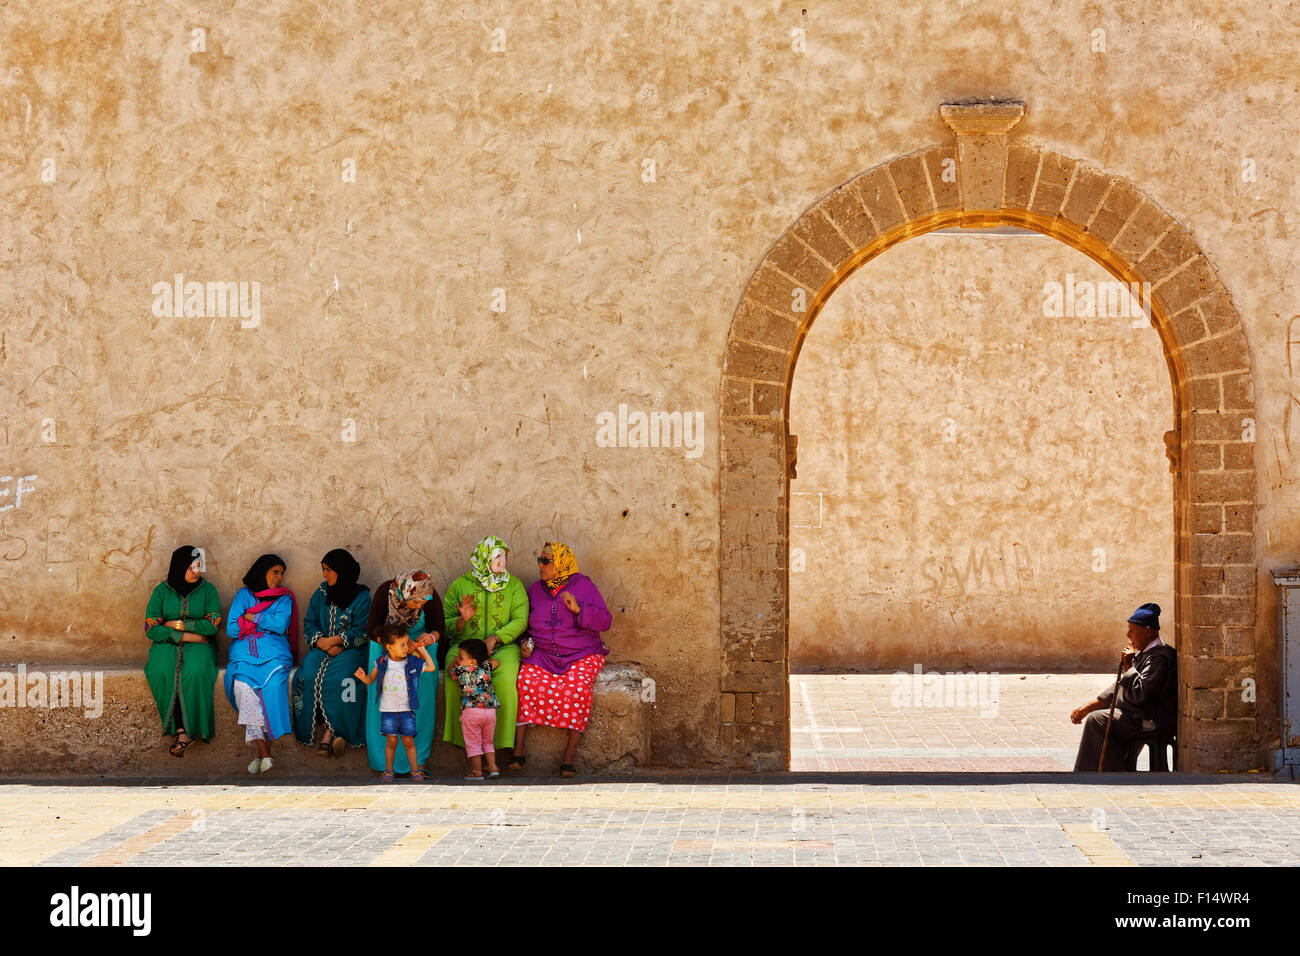 Les marocains s'asseoir près de l'entrée de la médina d'Essaouira Ville de Côte Atlantique, Maroc Banque D'Images